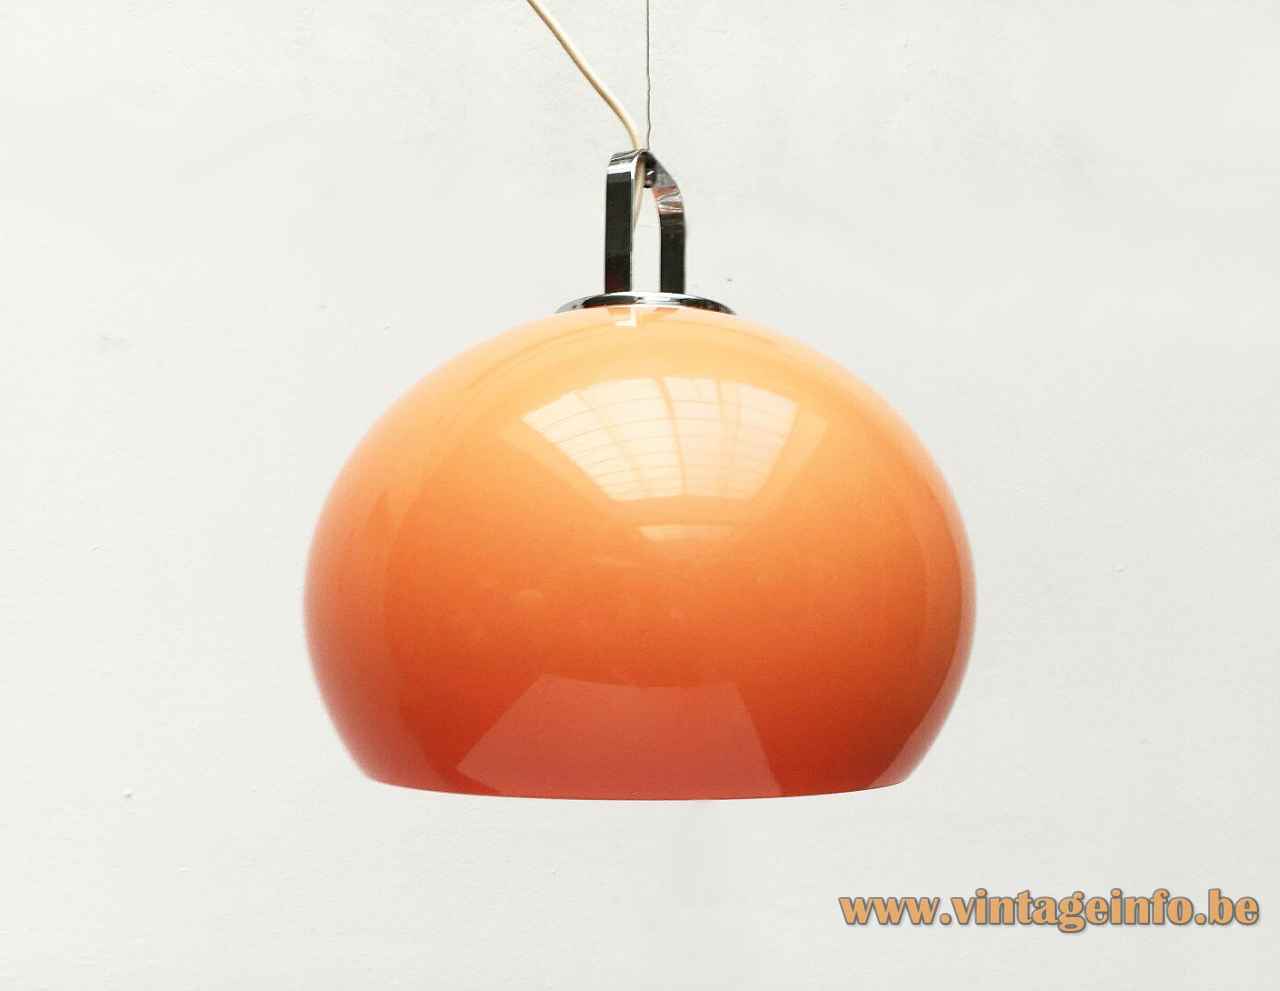 Harvey Guzzini Zurigo pendant lamp orange acrylic globe lampshade chrome handle 1960s 1970s iGuzzini Italy